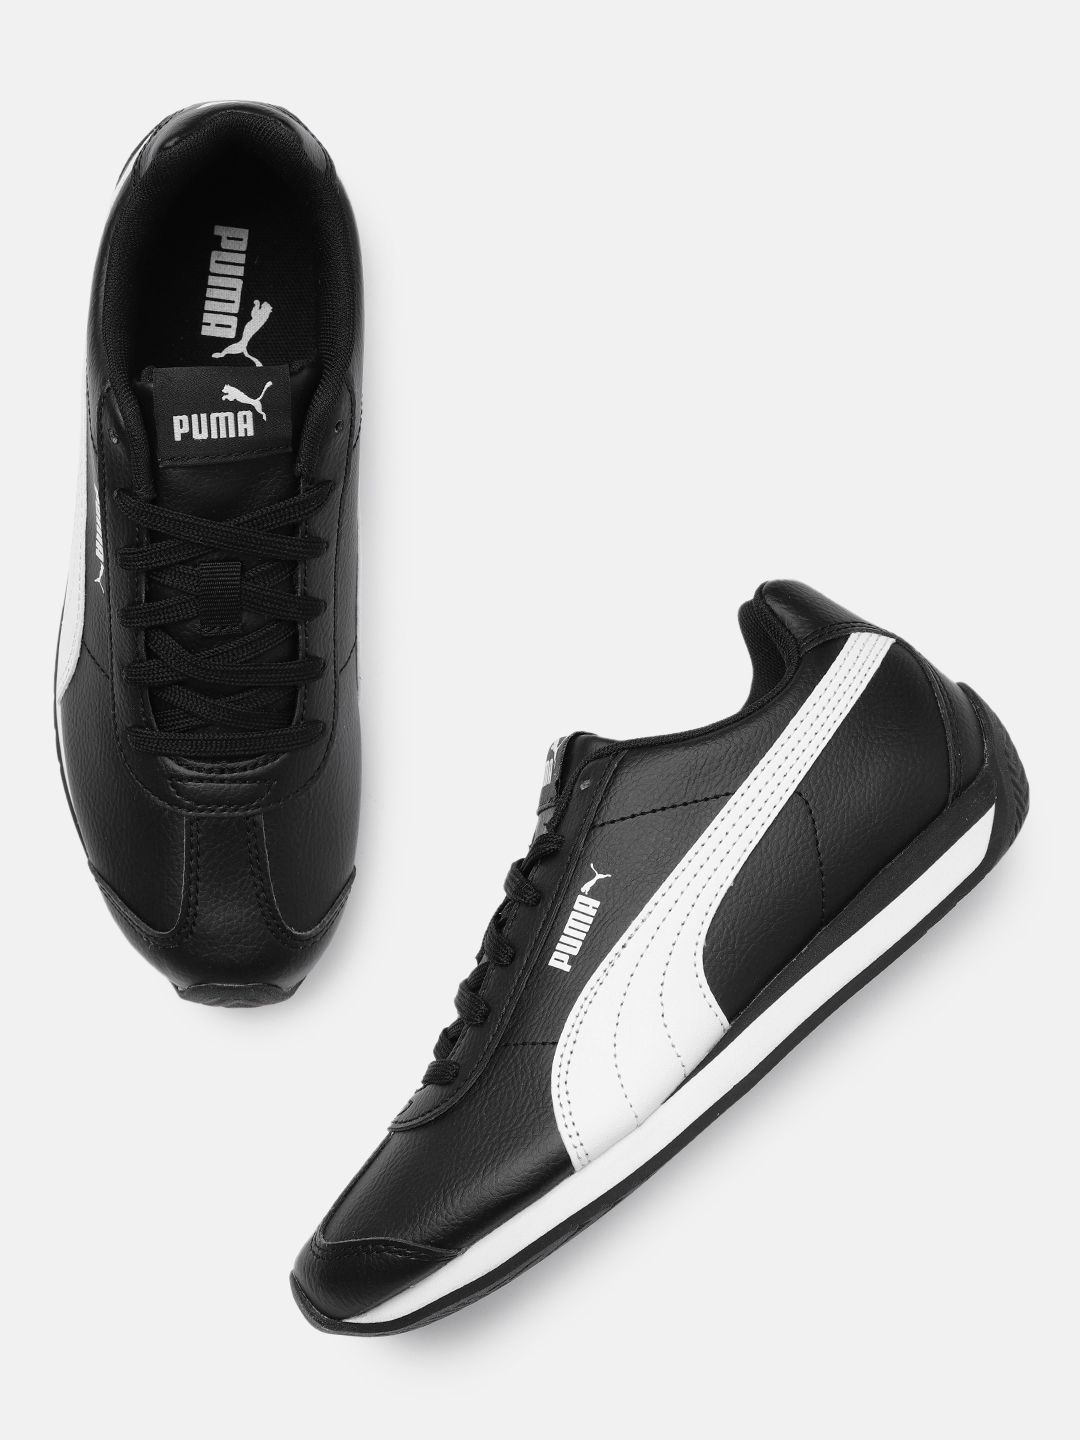 Puma Unisex Black Turin 3 Sneakers Price in India